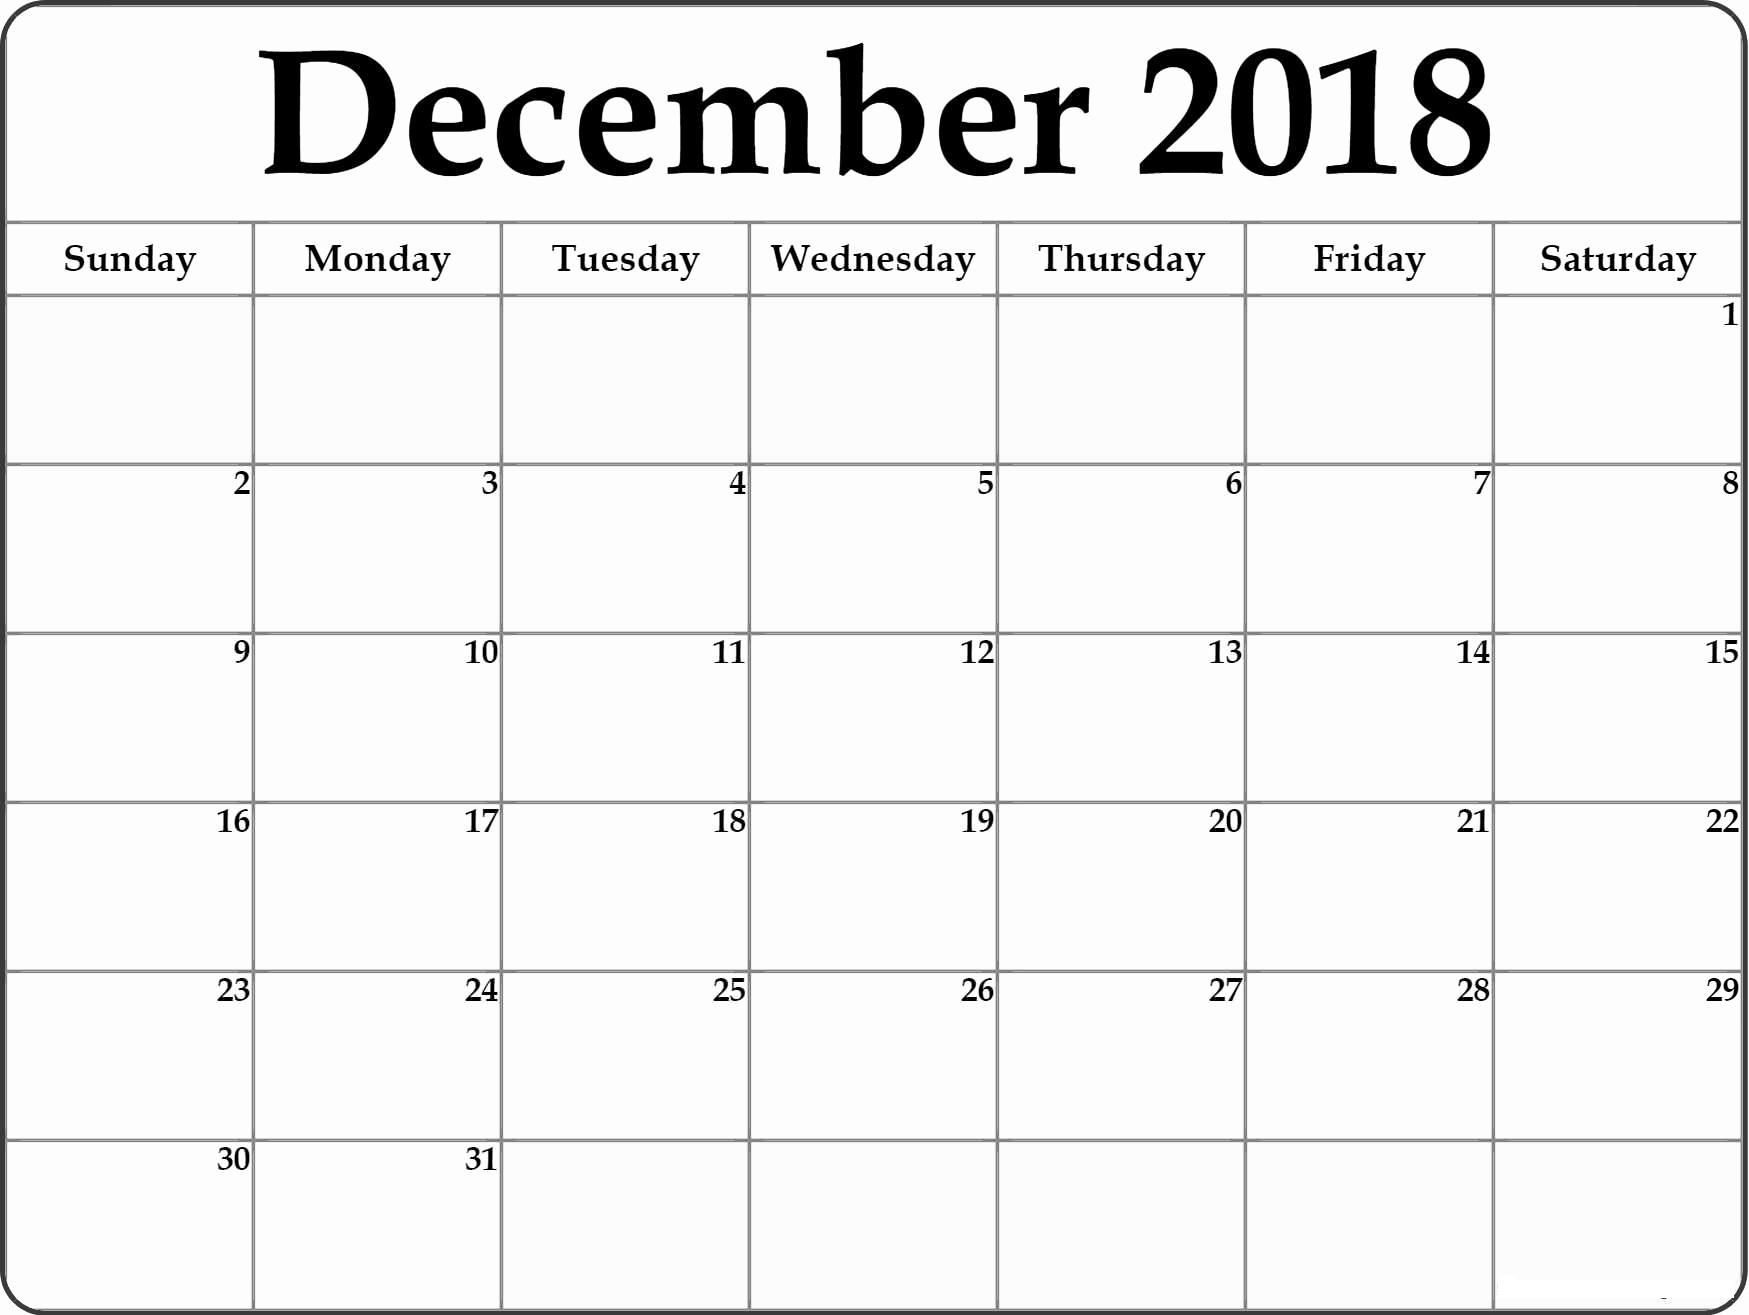 December 2018 Printable Calendar By Month | 2018 December